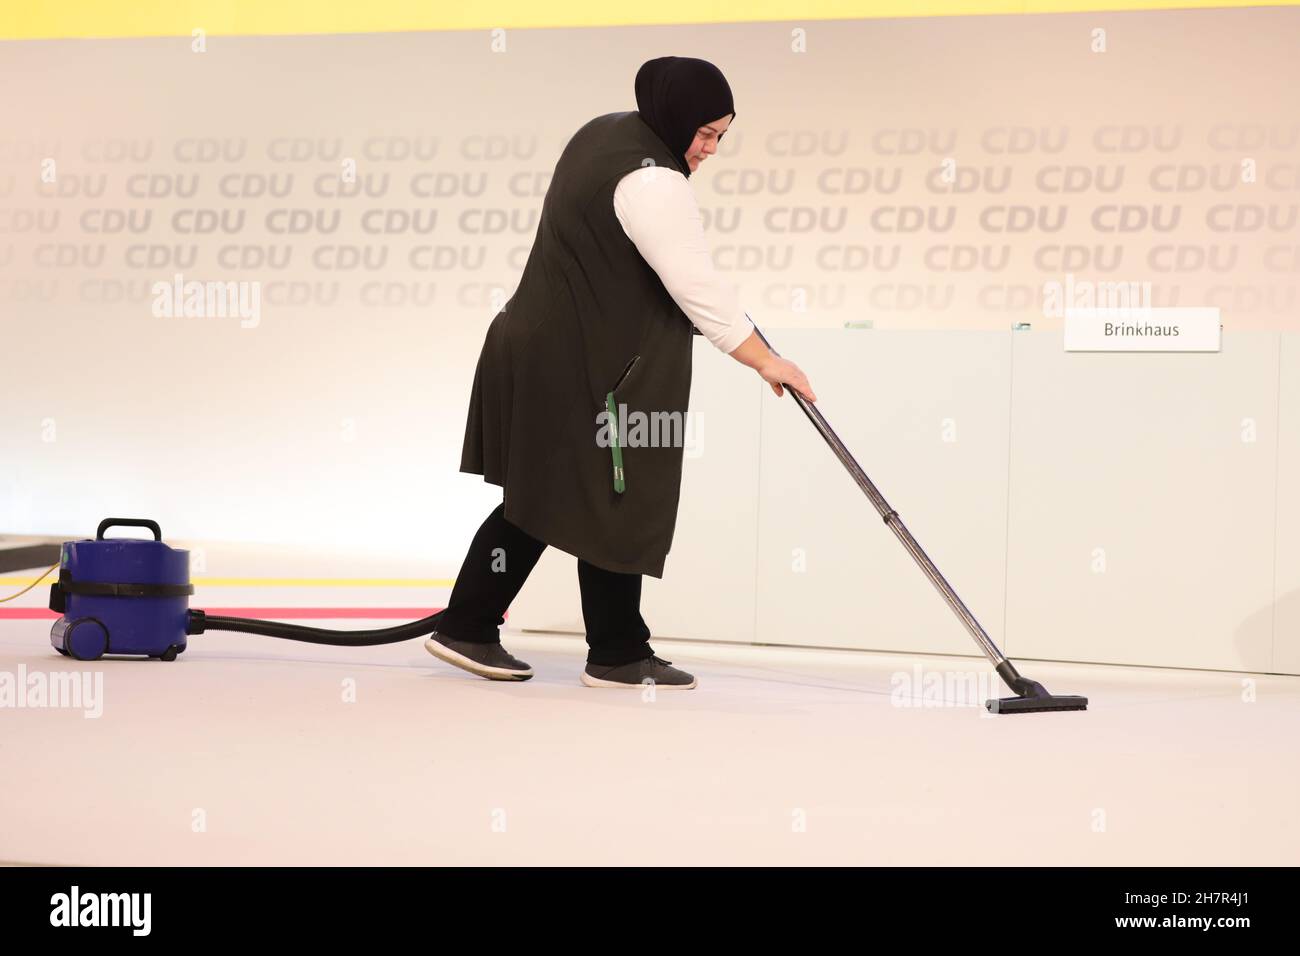 Friedrich Merz Kandidat für den CDU-Parteivorsitz auf dem Bundesparteitag der CDU 2018 in Hamburg Großreinemachen, eine Reinigungskraft reinigt mit einem Bodenstaubsauger die Bühne. Die Reinigungskraft trägt ein Kopftuch Stock Photo